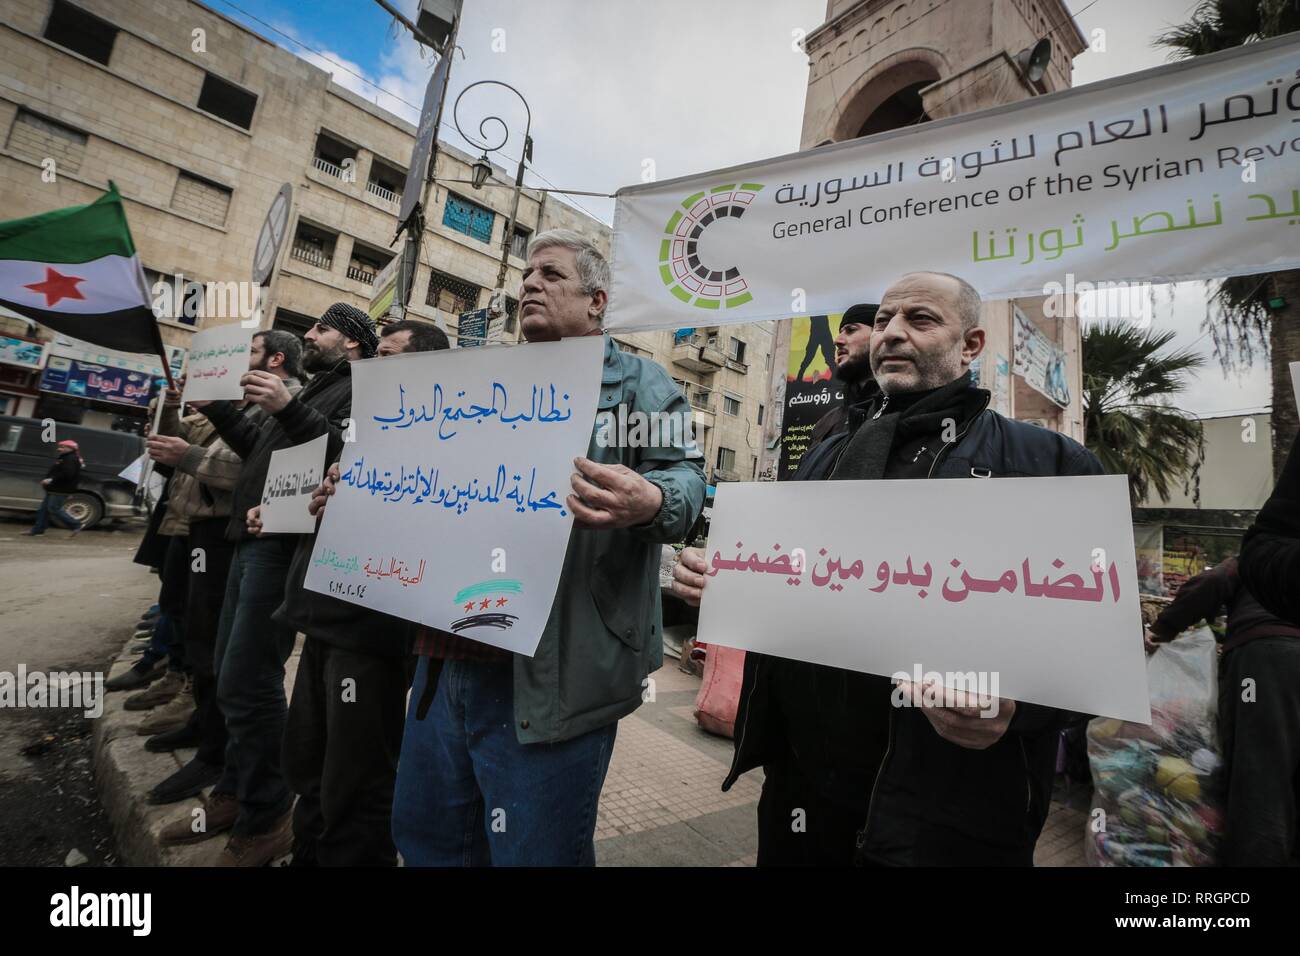 Les militants sont vu la tenue des pancartes pendant la manifestation. La population et les activistes de la ville d'Idlib, dénoncer le bombardement de villes et villages du sud d'Idlib et maintenir la responsabilité de la communauté internationale et la caution. Banque D'Images